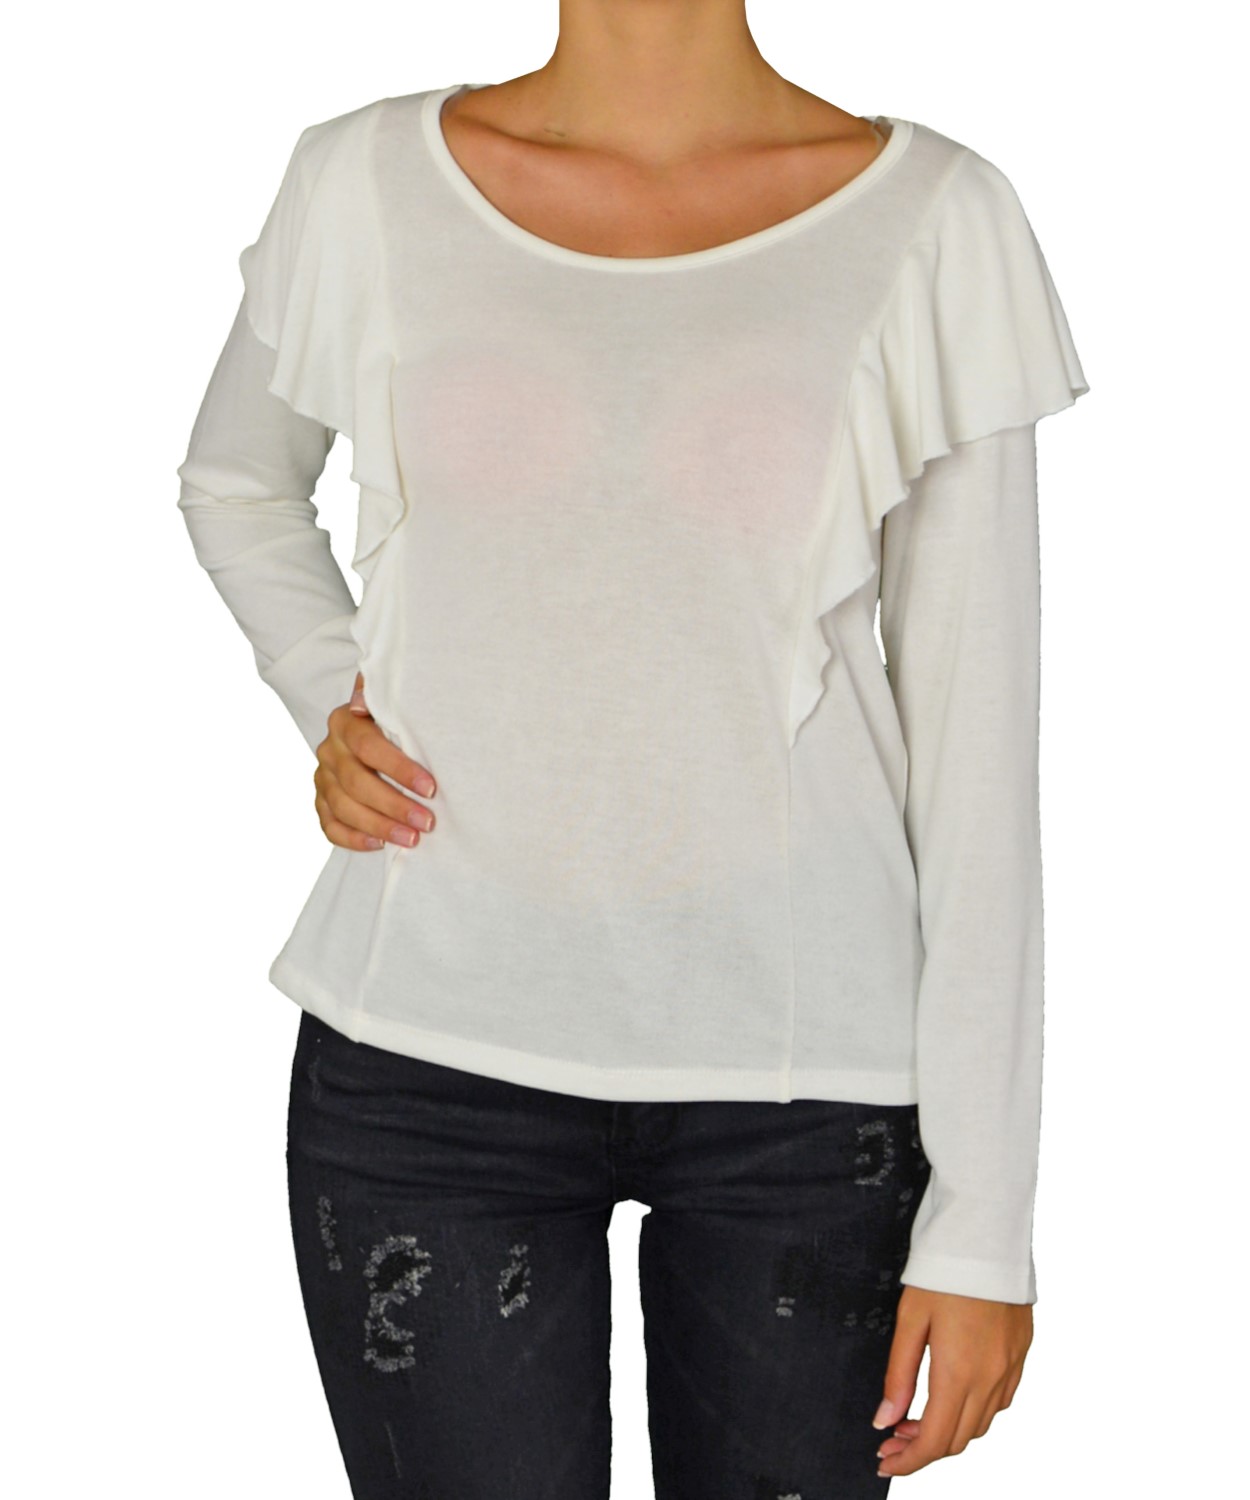 Γυναικεία μακρυμάνικη μπλούζα Lipsy λευκή με βολάν 2170015W